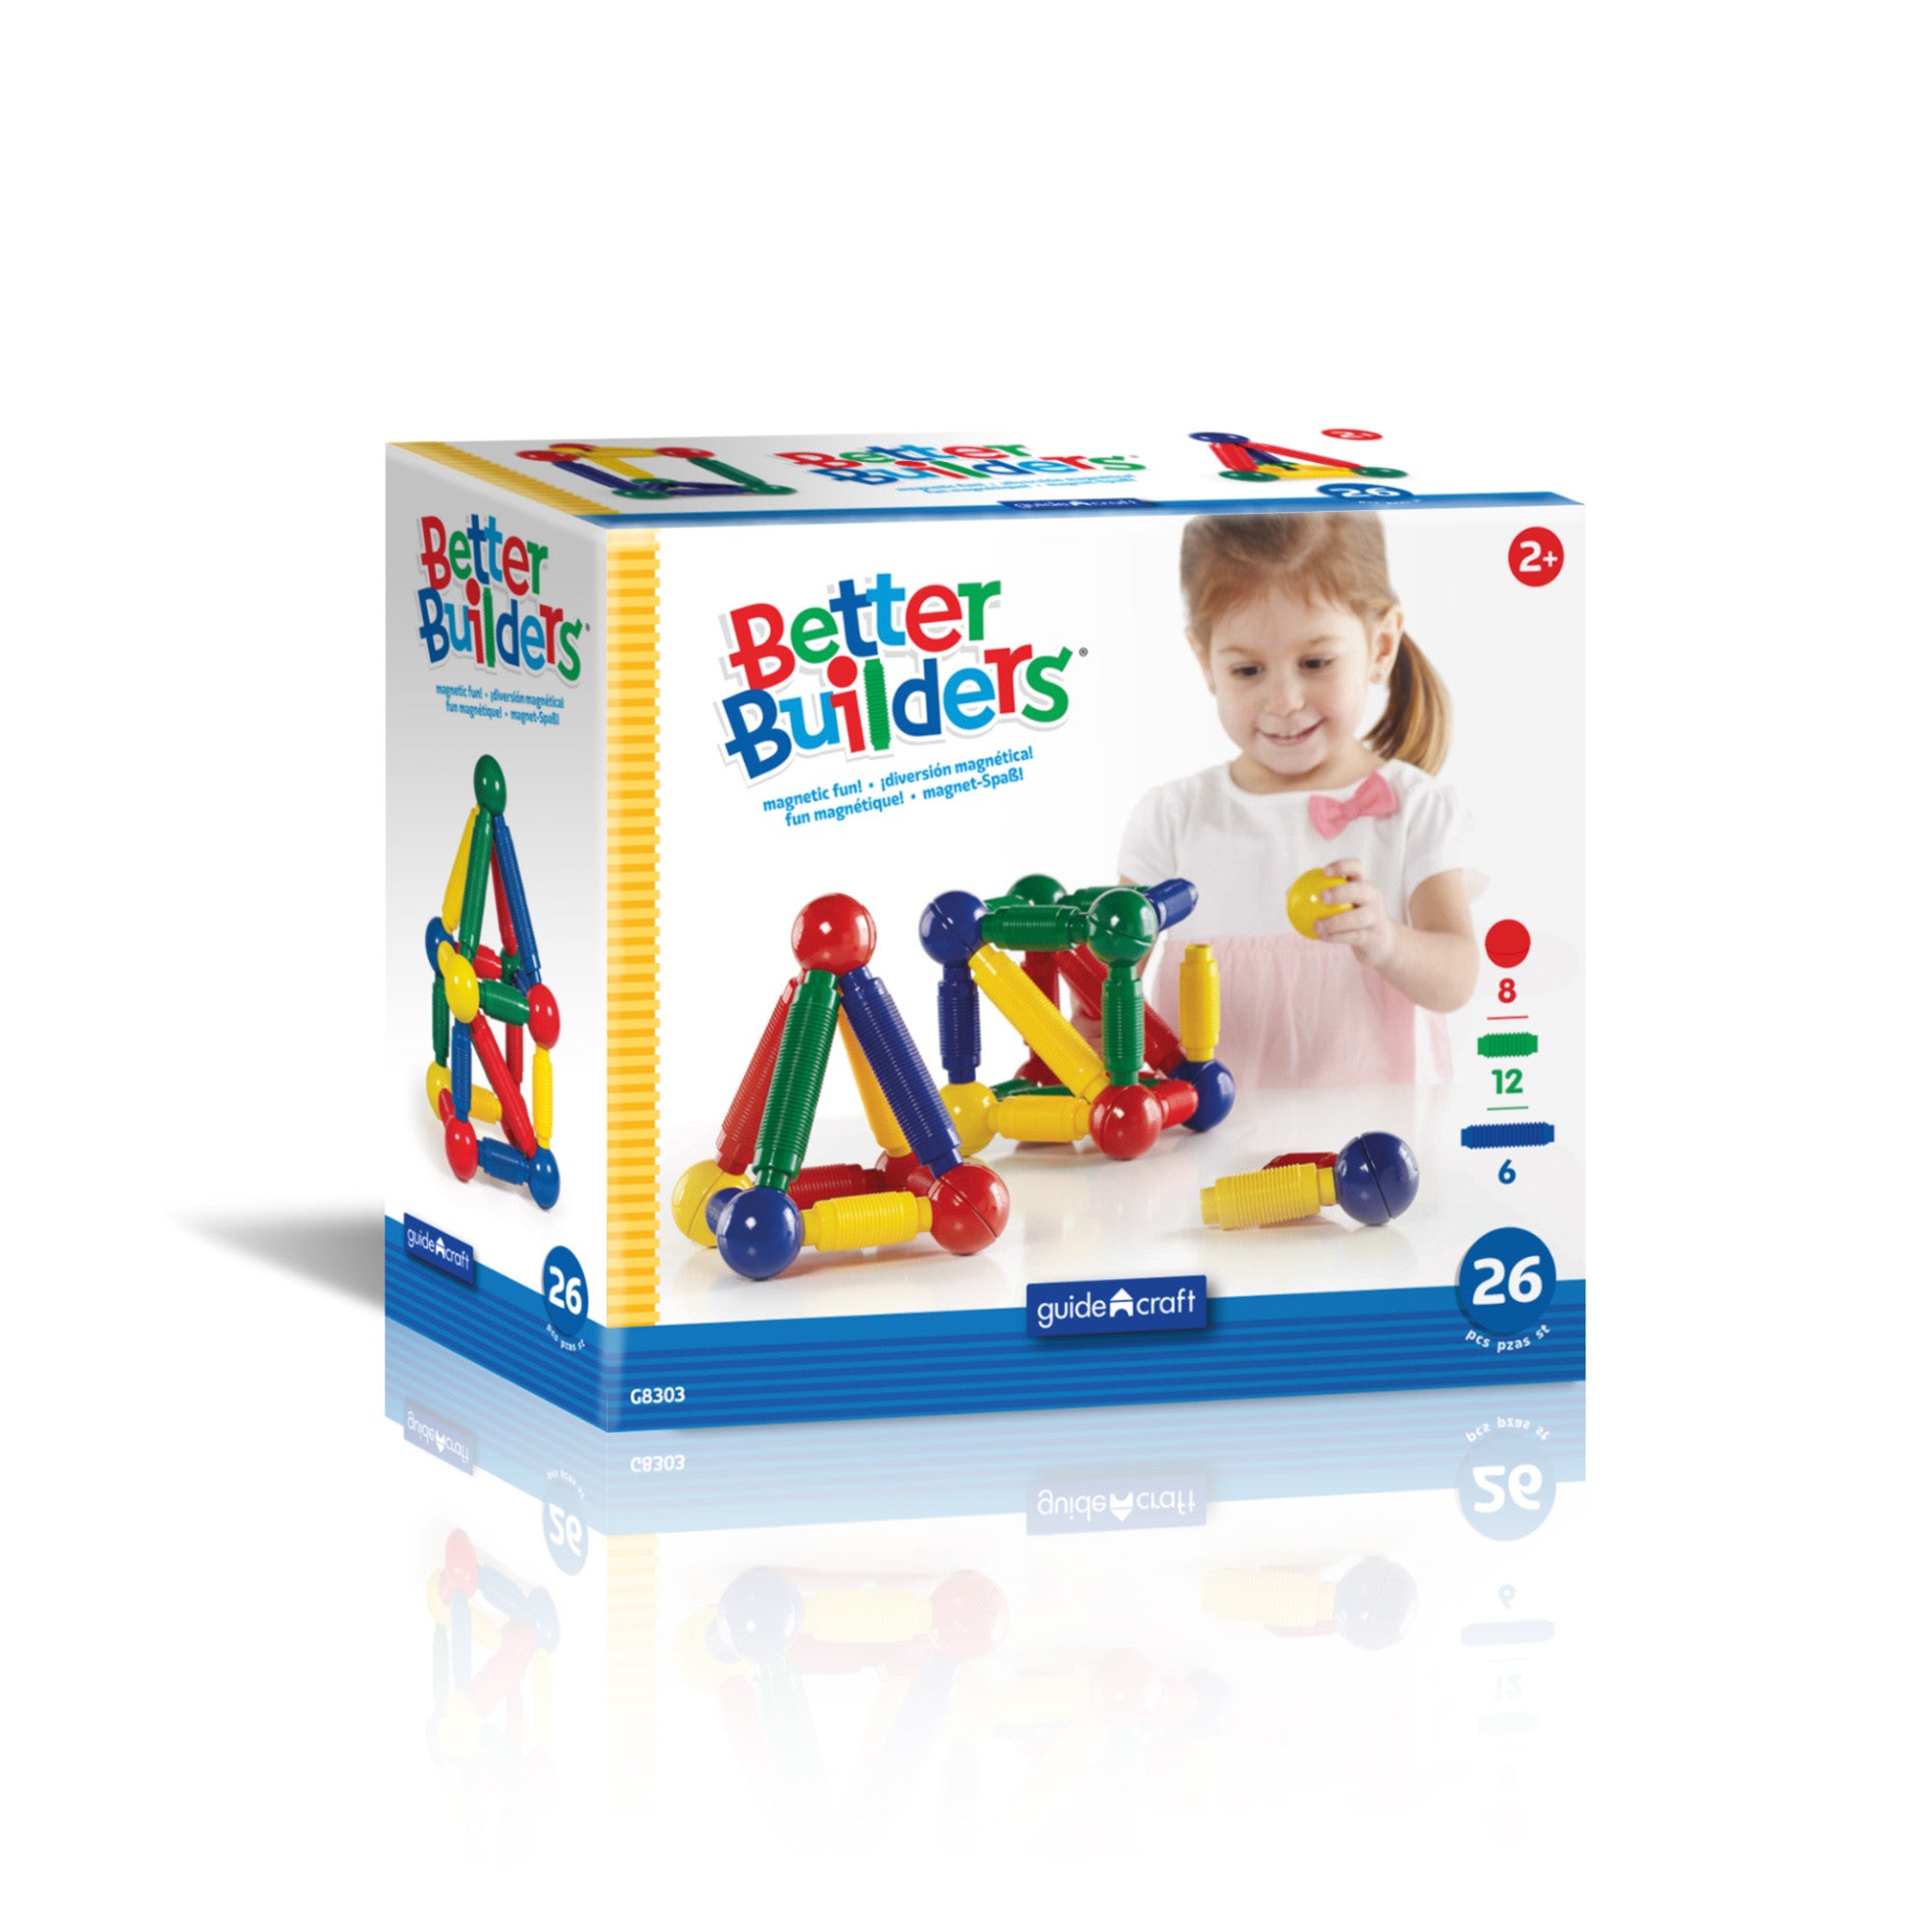 Guidecraft Better Builders® 26 Piece Set G8303